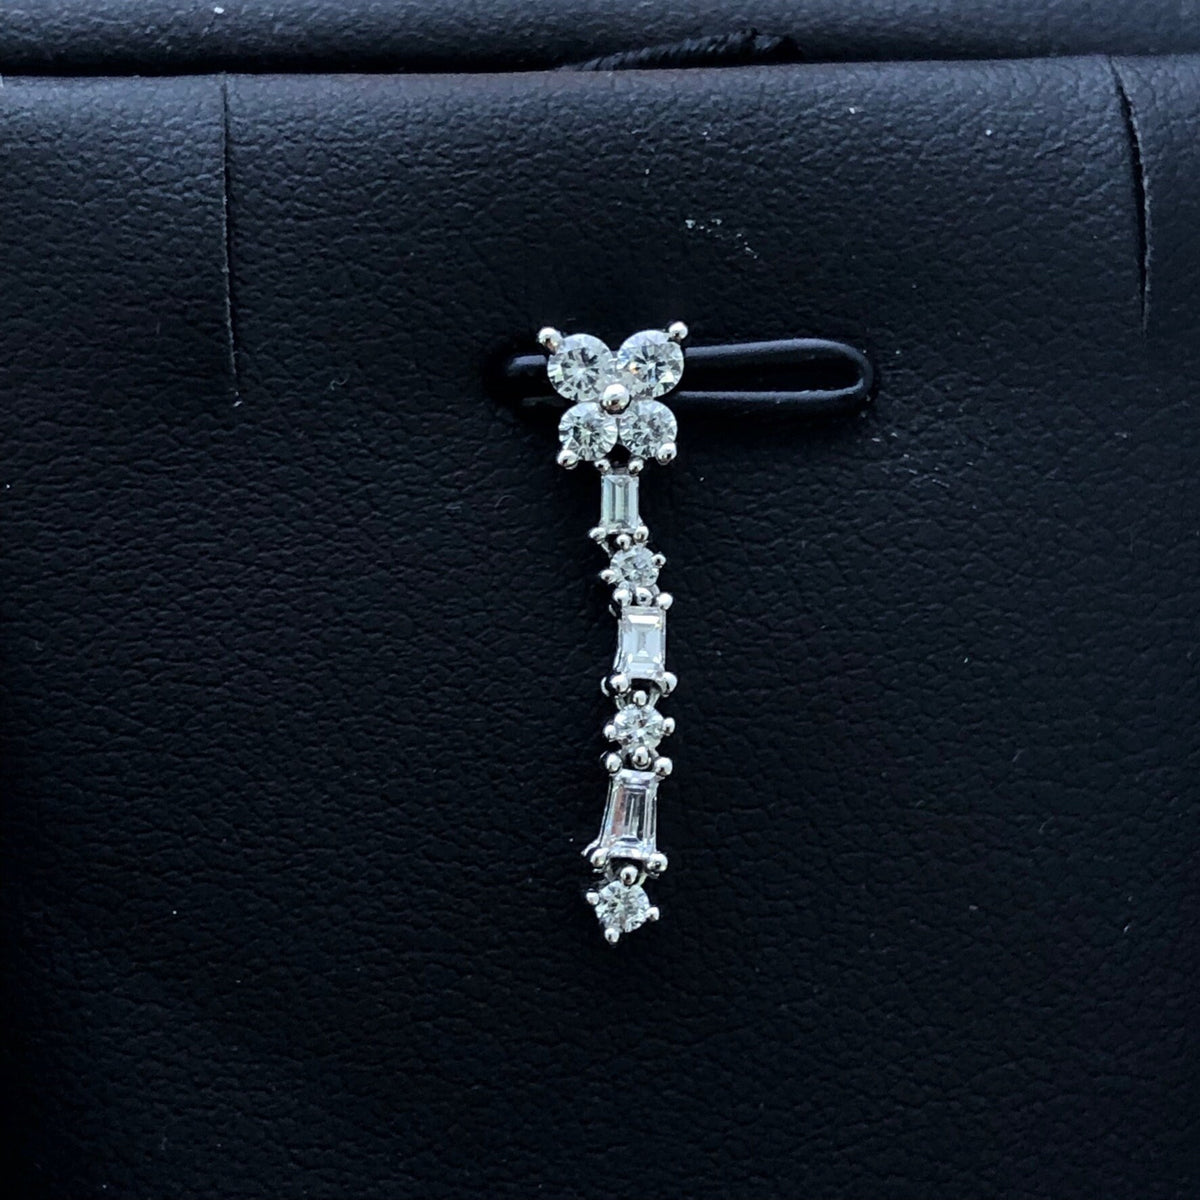 LIV 14k White Gold & Diamonds Baguette Cut Flower Design Halo Pendant Necklace Gift